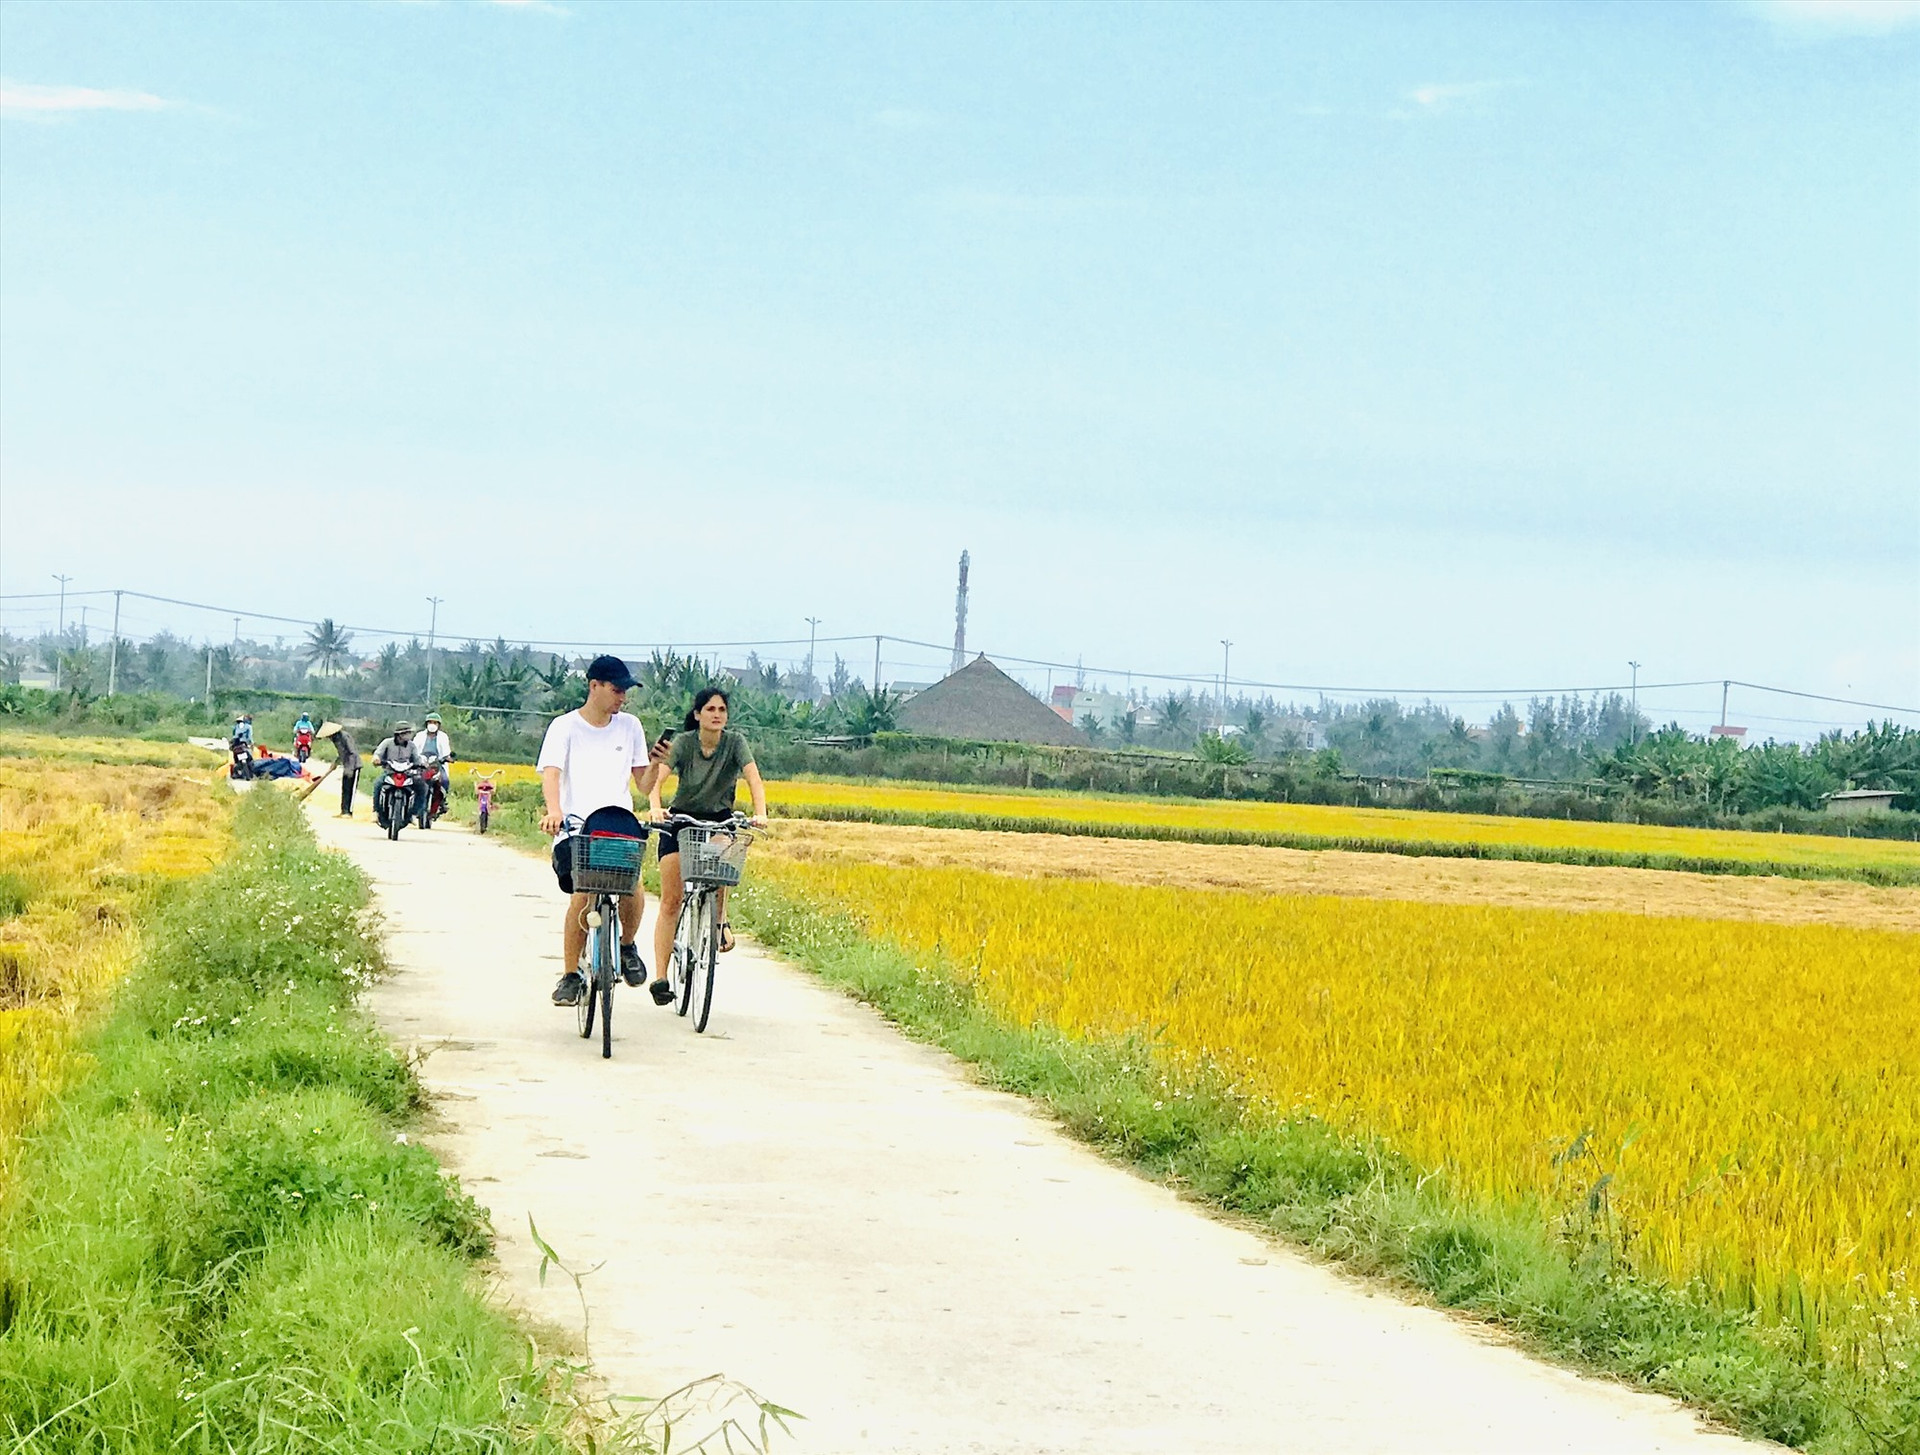 Du khách quốc tế rất thích không gian xanh, chứa đựng nhiều giá trị văn hóa ở Quảng Nam. Ảnh: Q.T